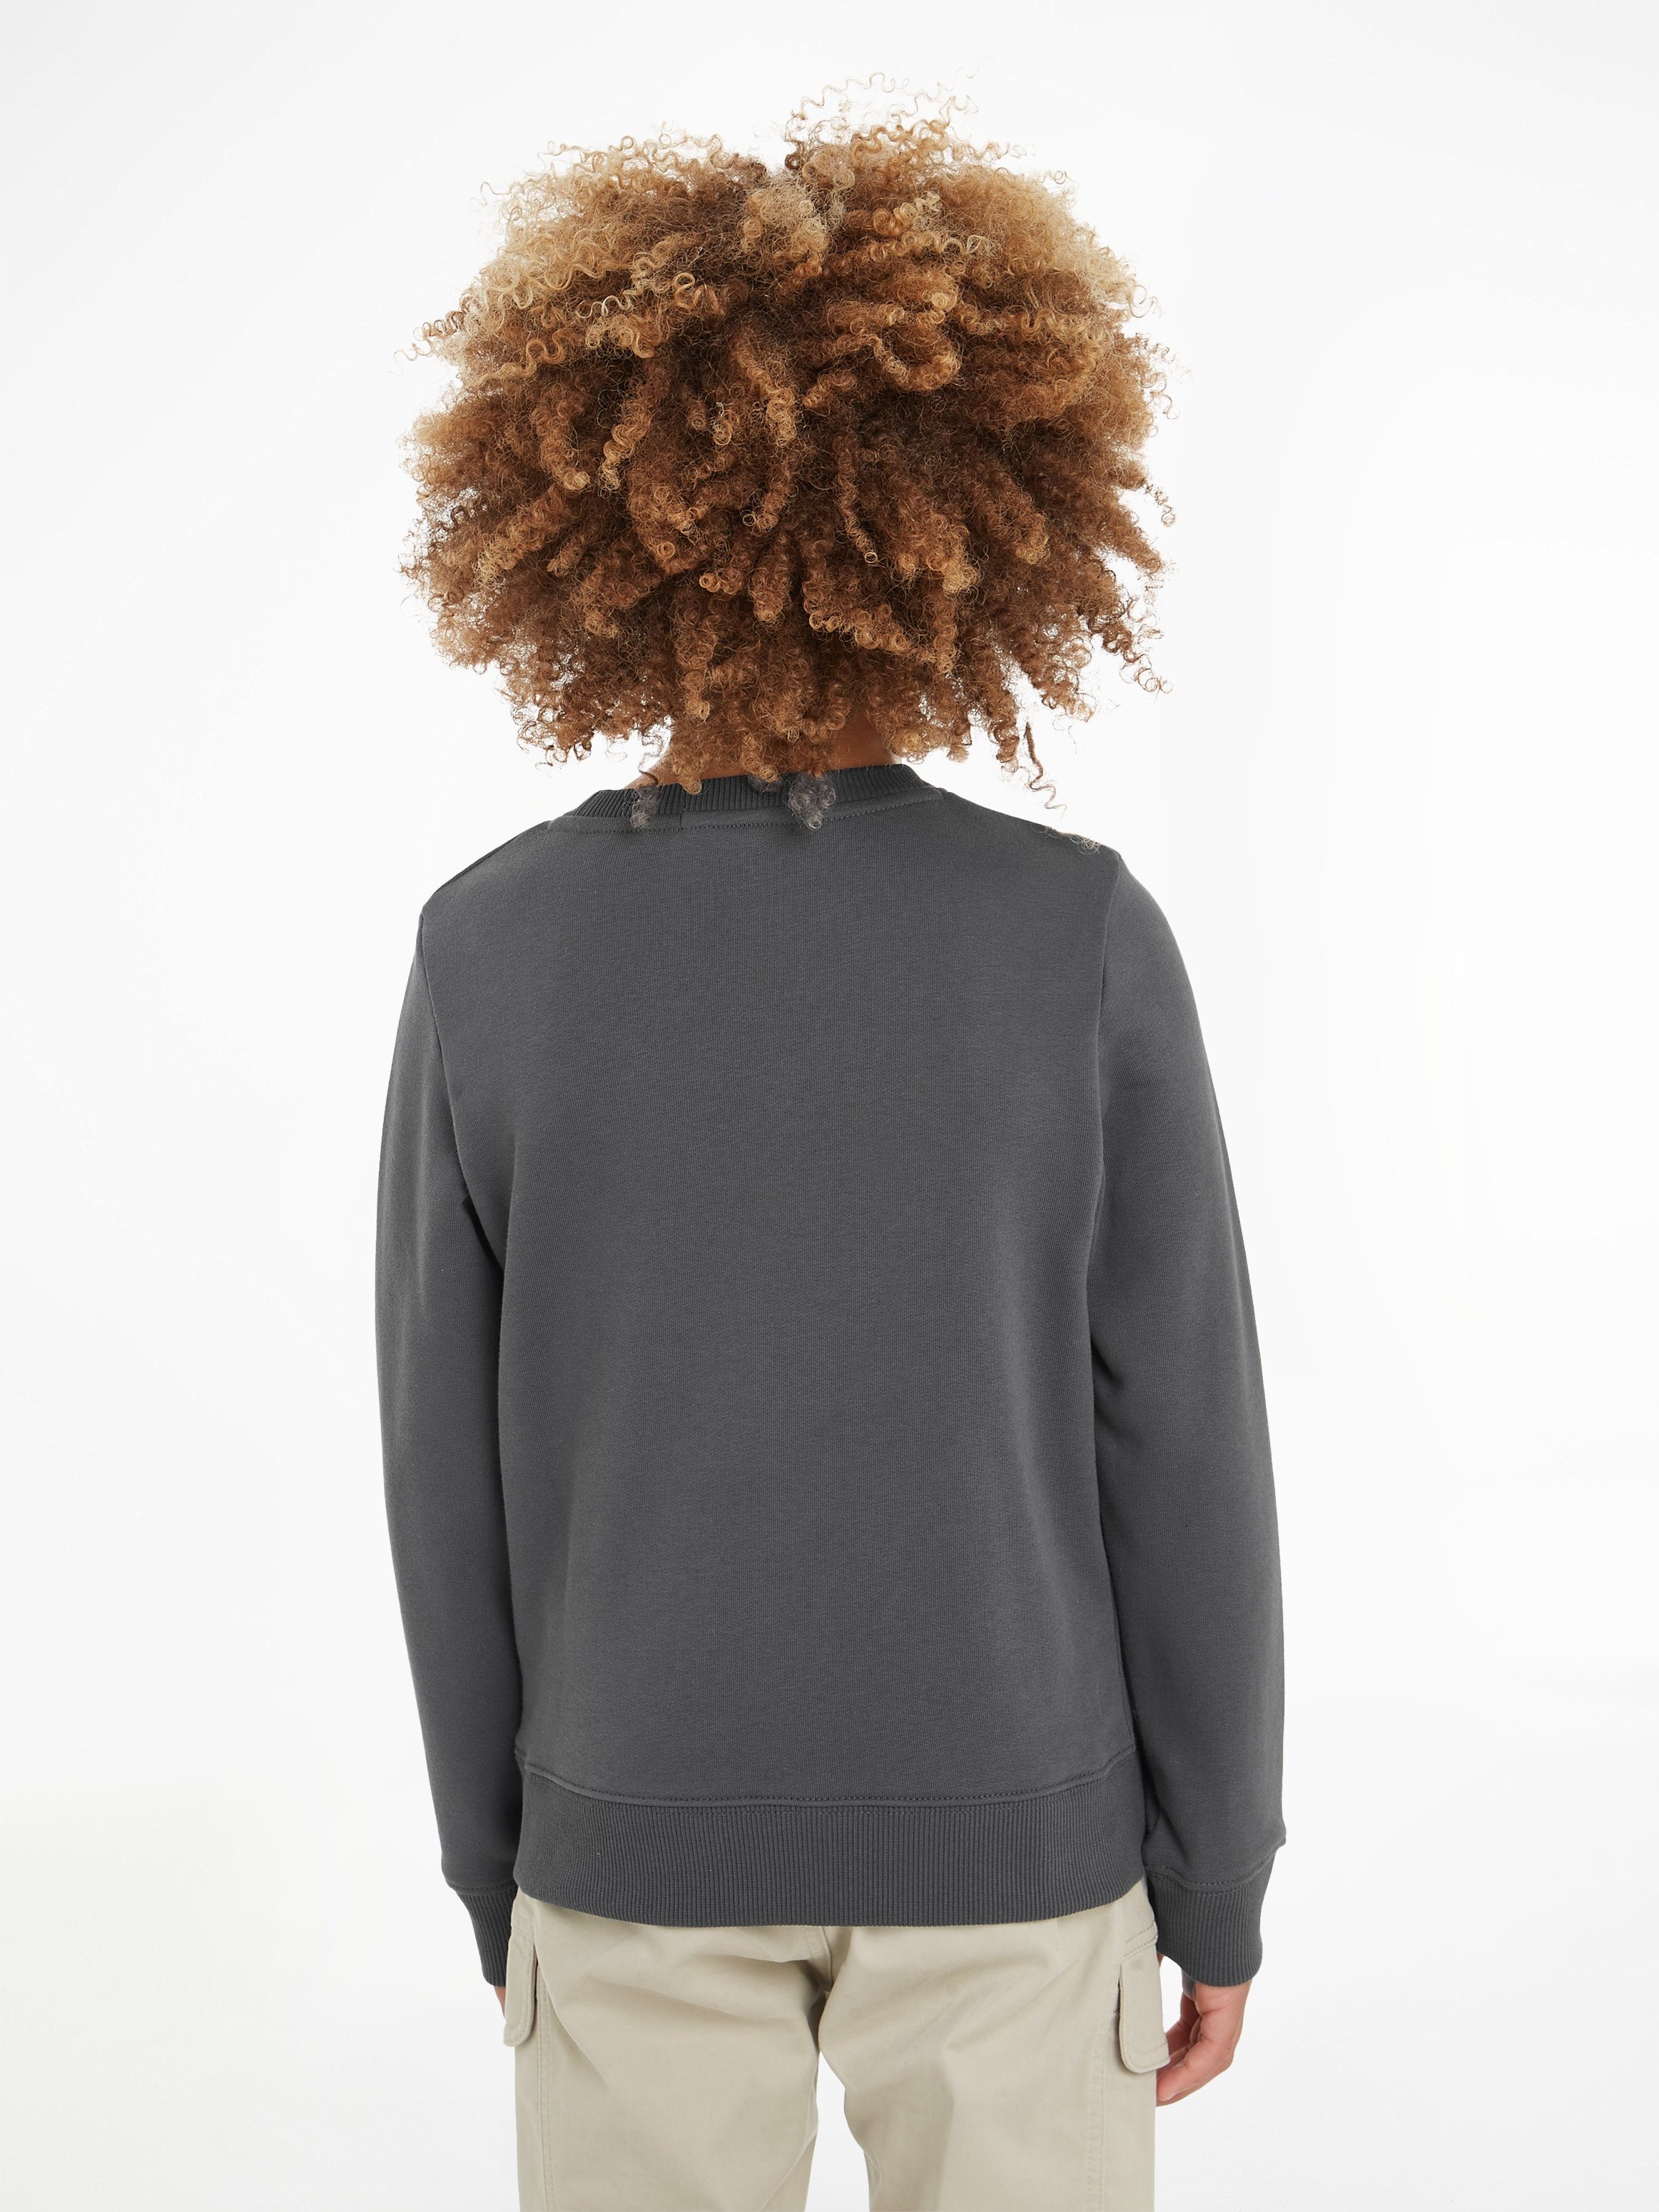 Calvin Klein STACK Sweatshirt mit Logodruck LOGO CKJ SWEATSHIRT Jeans